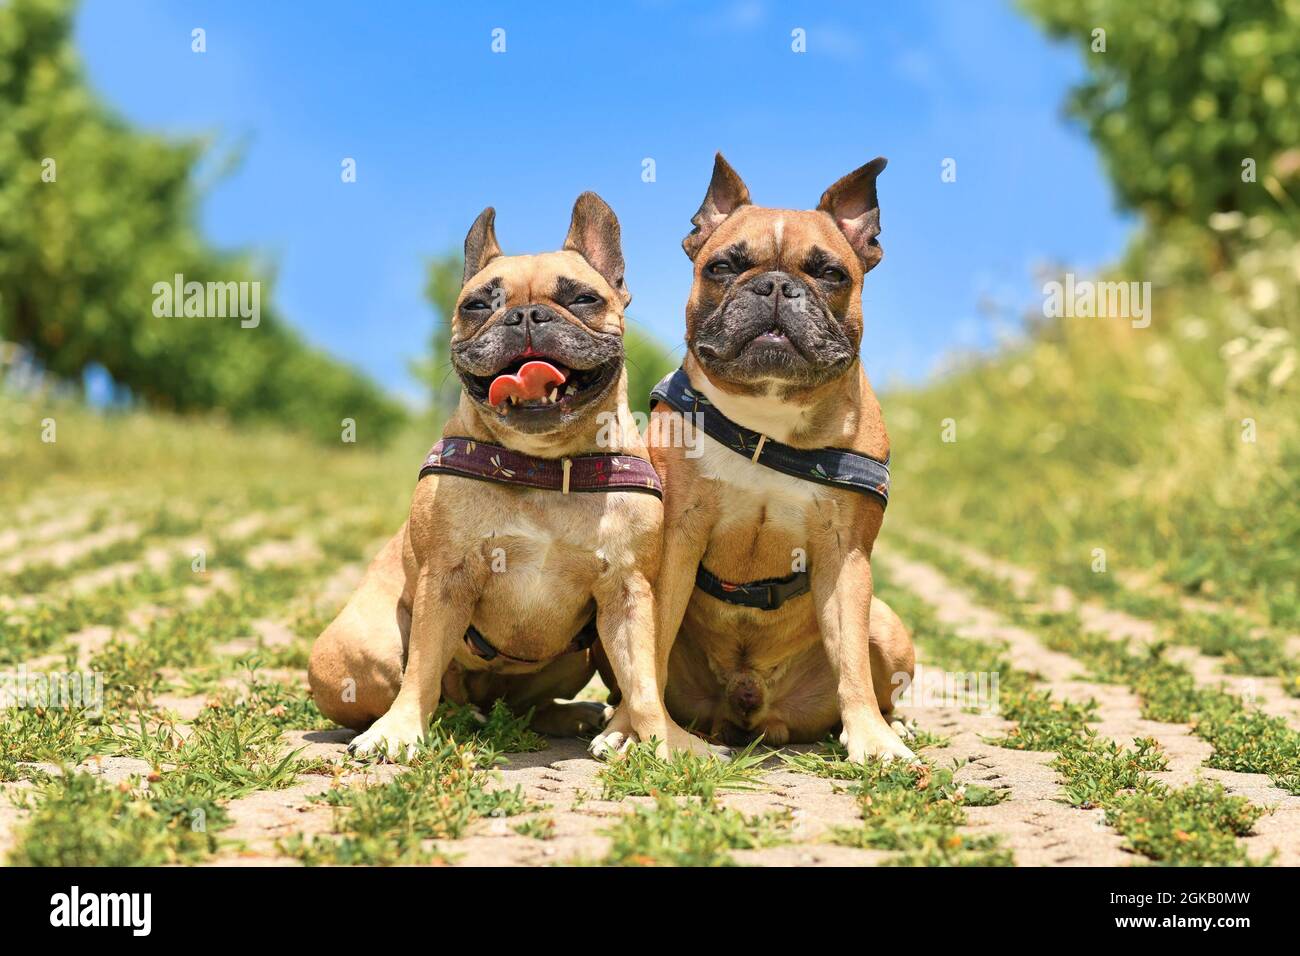 Coppia di simili cercando francesi Bulldog cani seduti accanto a eacth altre imbracature di cane indossare all'aperto in estate Foto Stock